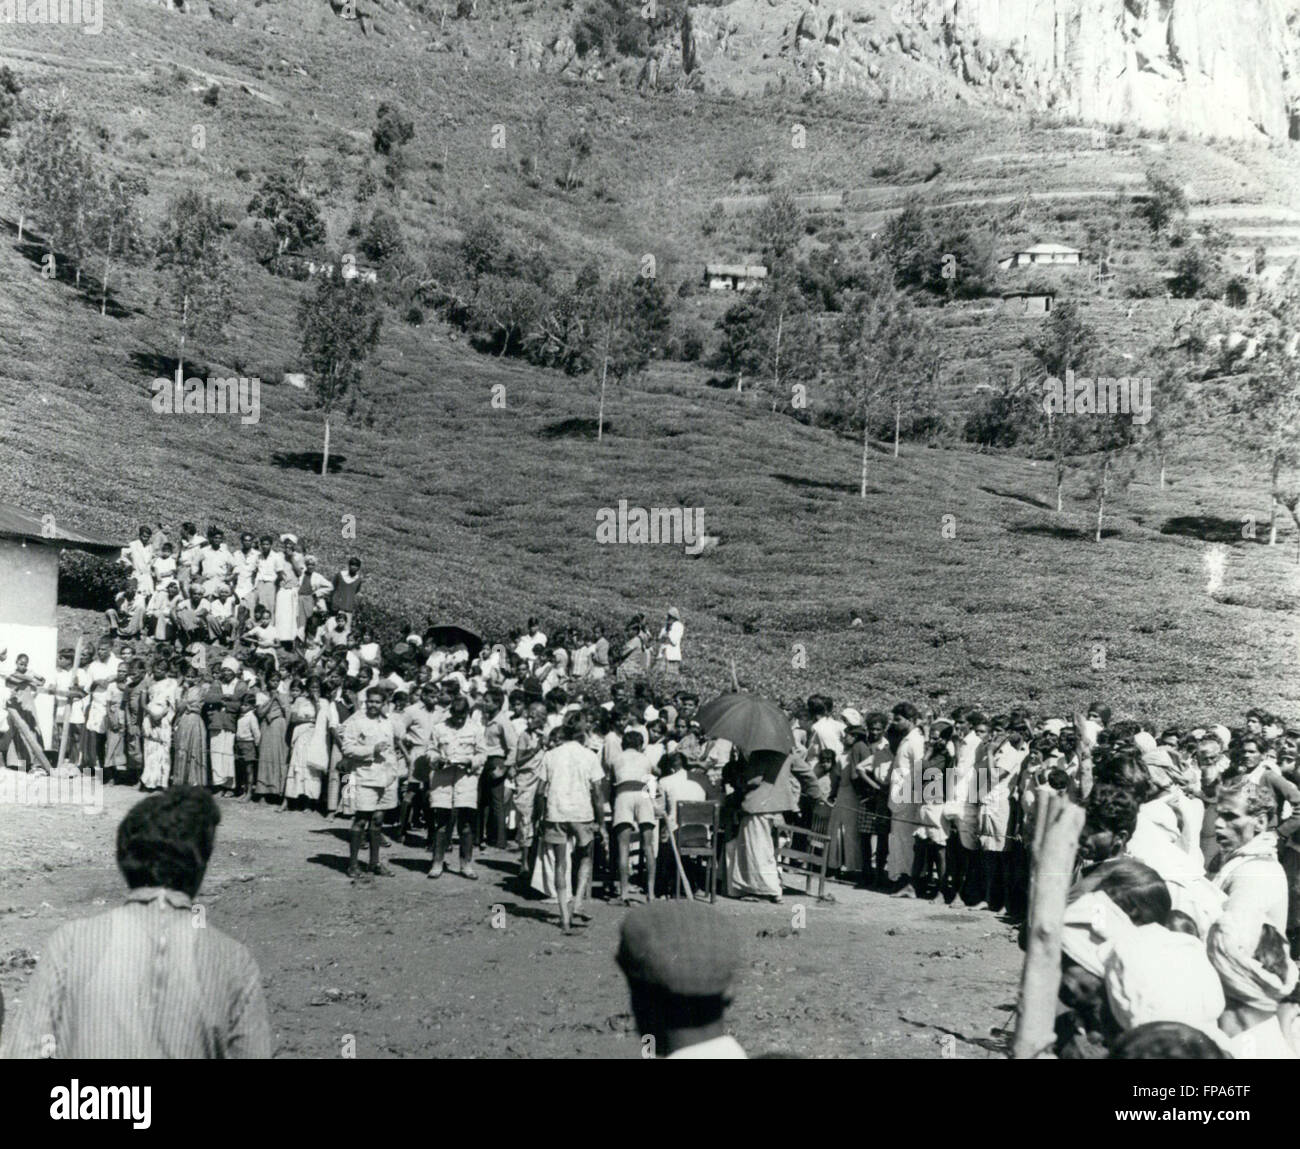 1962 - Vingt personnes tuées dans un glissement de plantation au Sri Lanka (Ceylan) : Une tragédie a frappé le district de culture du thé Ragala Des, dans le centre du Sri Lanka, récemment, lorsqu'un glissement de terrain s'est produit sur un plateau Liddlesdale Estate, recouvrant complètement une coopérative et enterrer vivants 21 personnes qui achètent leur ration alimentaire hebdomadaire à l'époque. Photo montre des auxiliaires de justice, assisté par le personnel de police, la tenue d'une enquête sur le décès. © Keystone Photos USA/ZUMAPRESS.com/Alamy Live News Banque D'Images